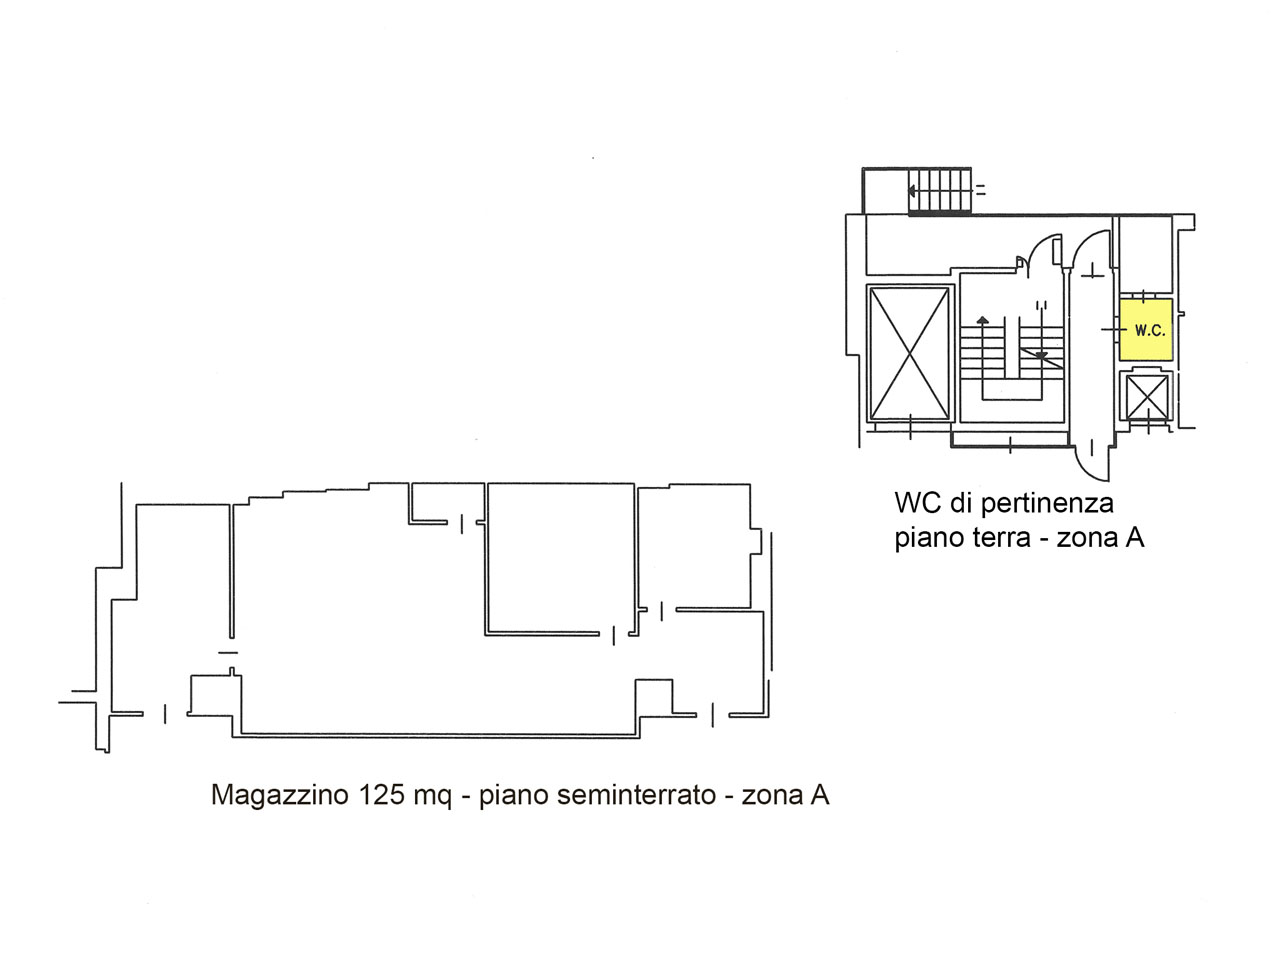 Planimetria magazzino 125 mq seminterrato, 4 locali, 1 bagno, Atlantic Business Center via Fantoli 7 Milano mecenate